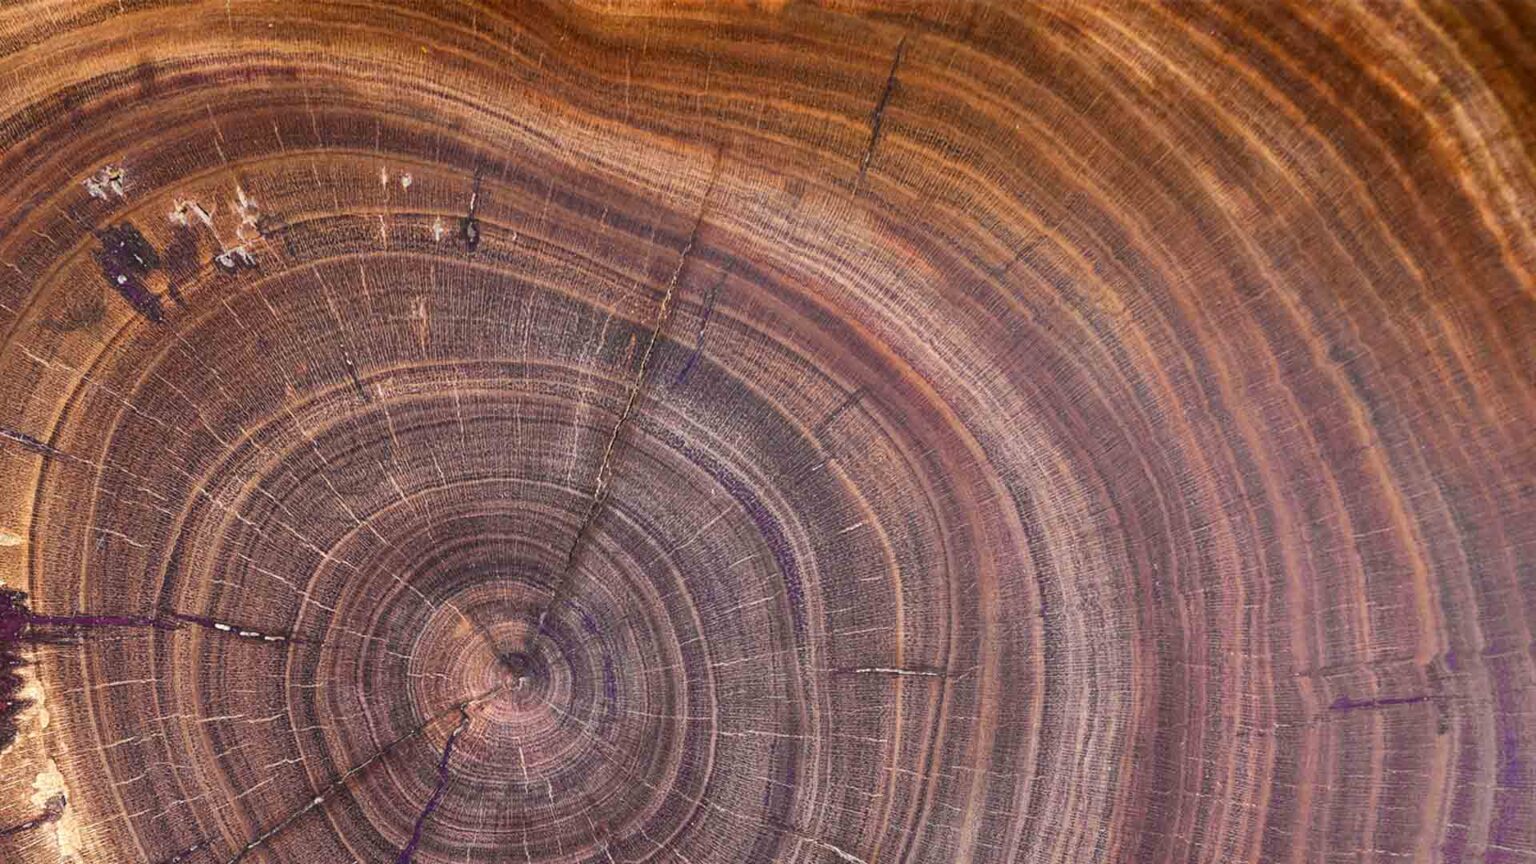 Corte transversal de madera de caoba, los anillos de crecimiento representan la edad biológica.